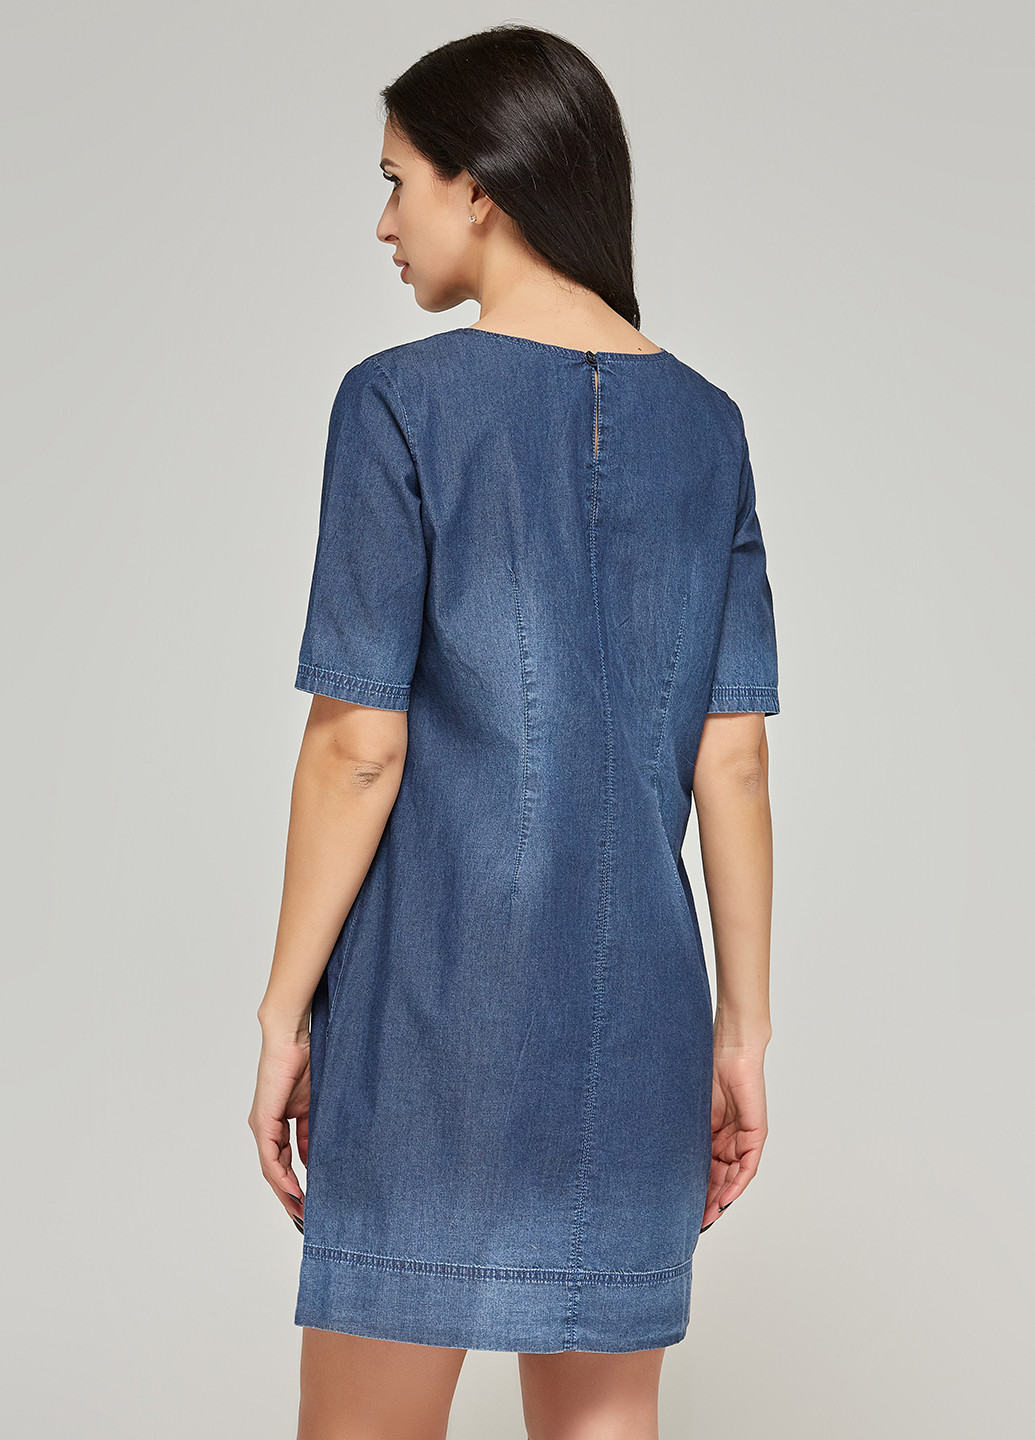 Синее джинсовое платье платье-футболка MN с рисунком